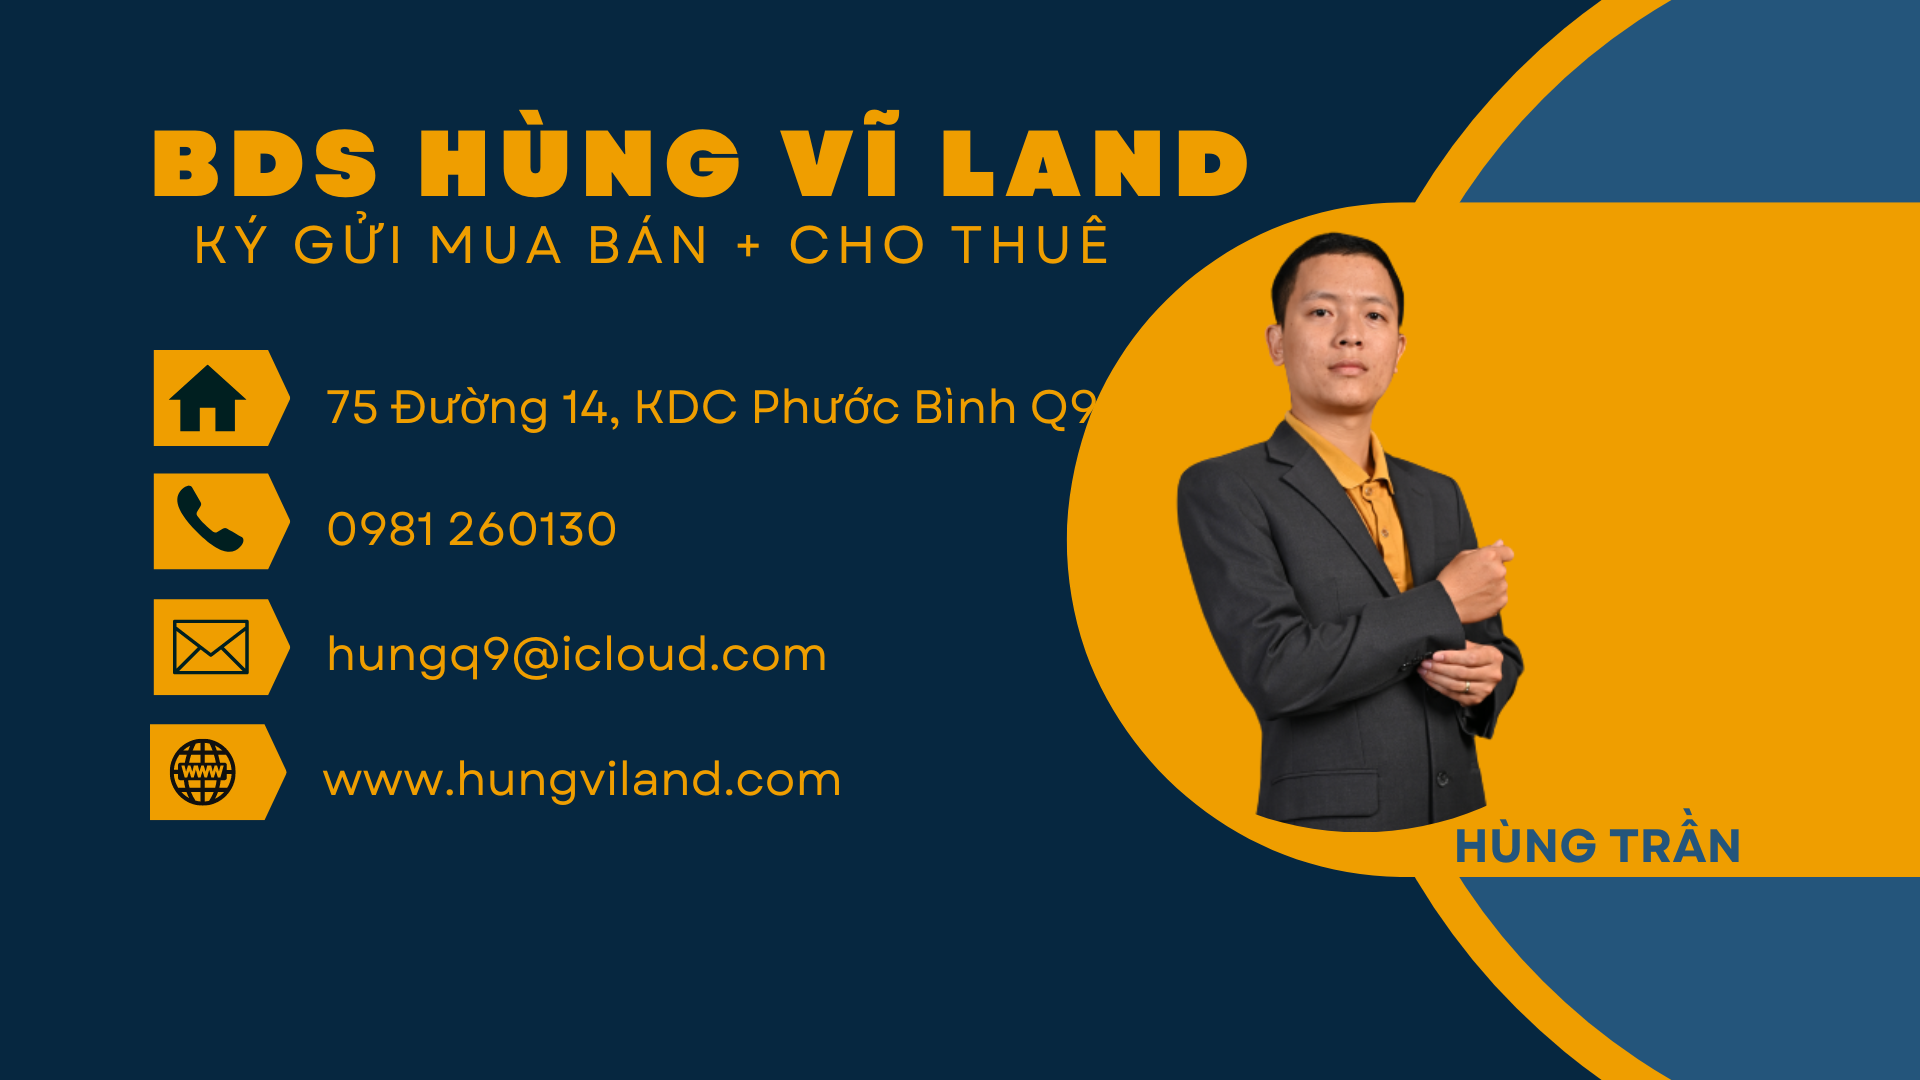 BDS HUNGVILAND  Biệt Thự Compound ABC Trần Não – Q2 Giá 95 Tỉ 30/03/2023